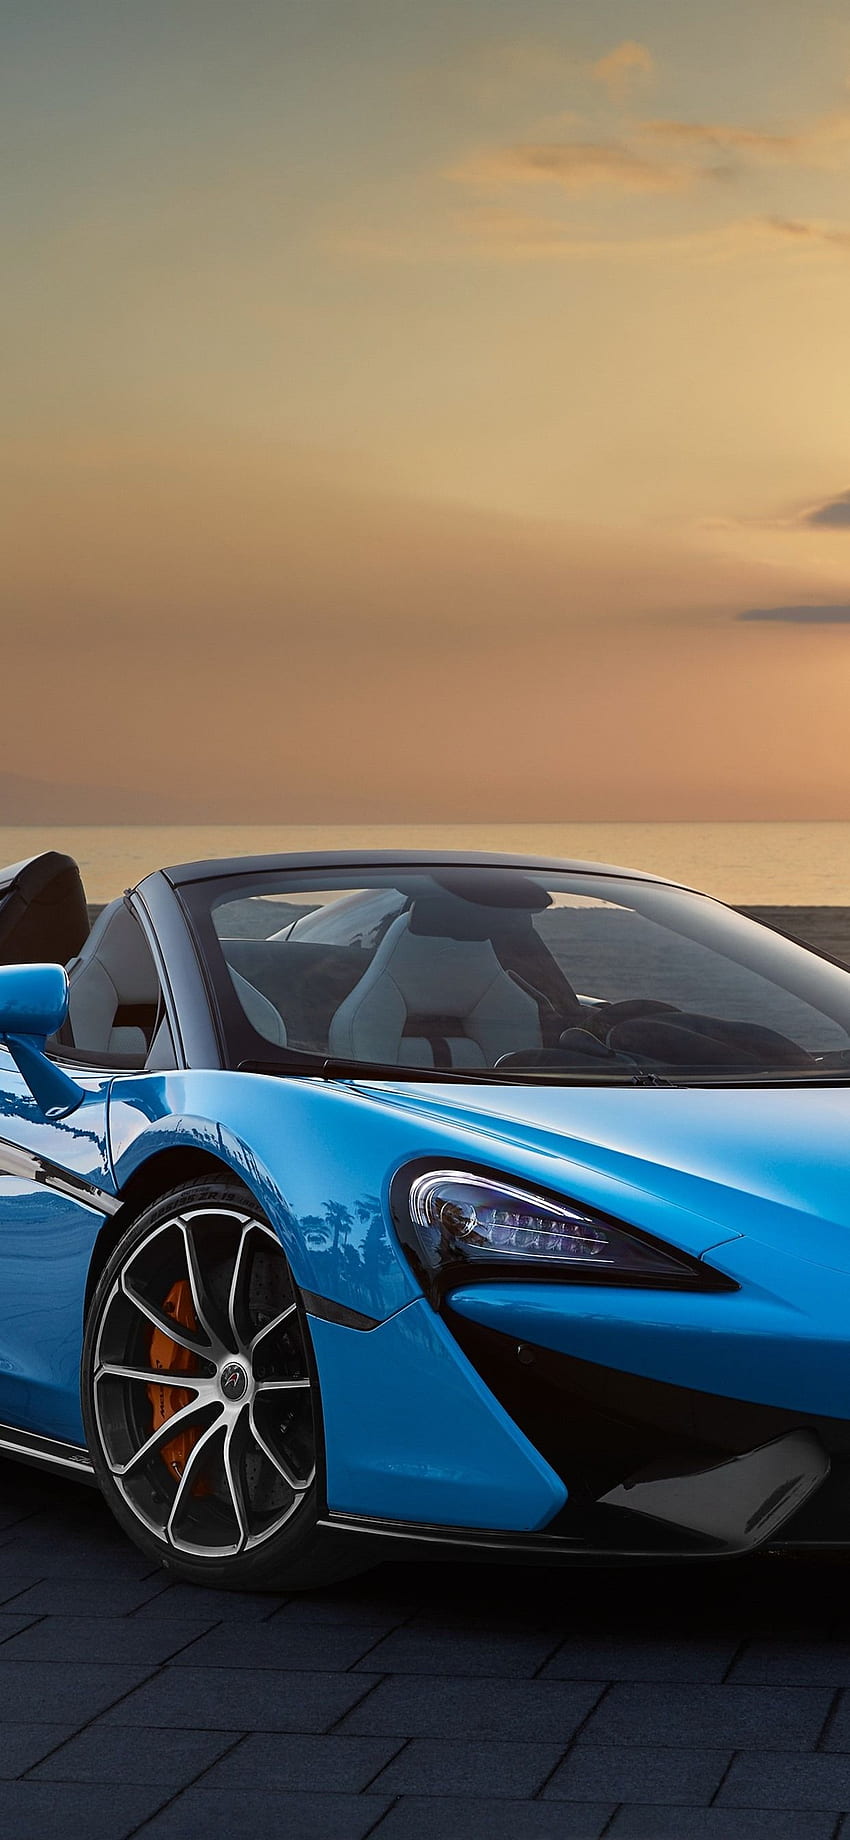 McLaren 570S descapotable azul, atardecer, mar iPhone fondo de pantalla del teléfono